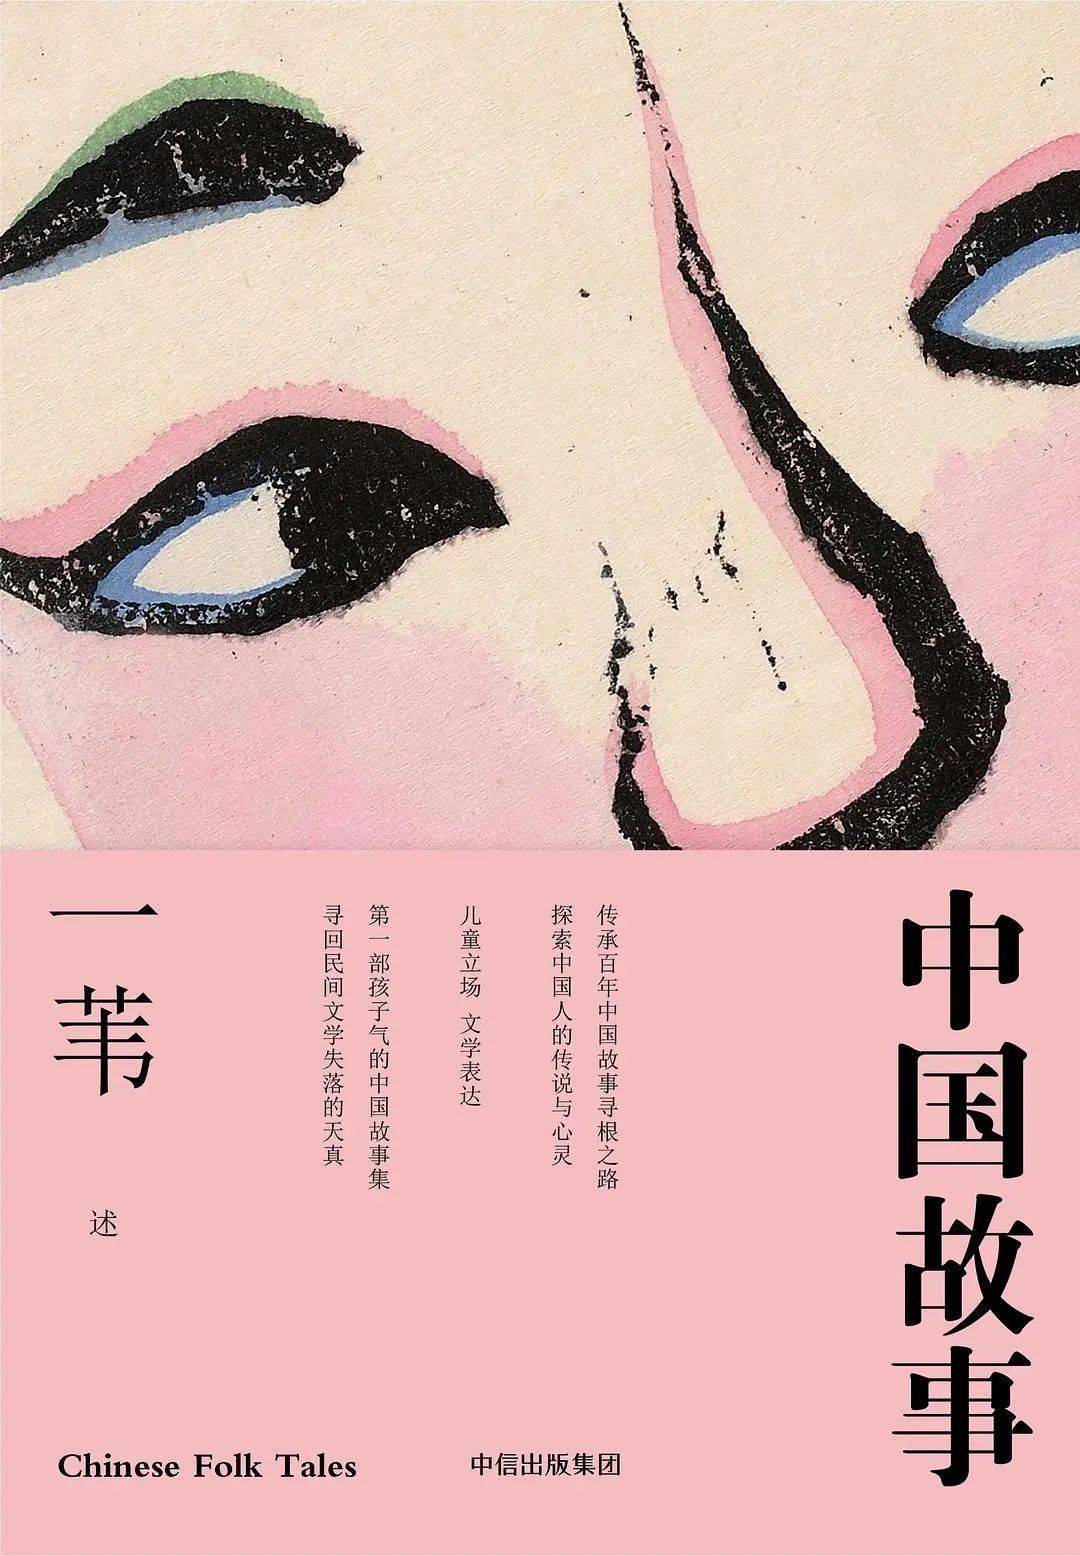 青少年阅读访谈录 一苇 阅读中国民间故事的当代意义